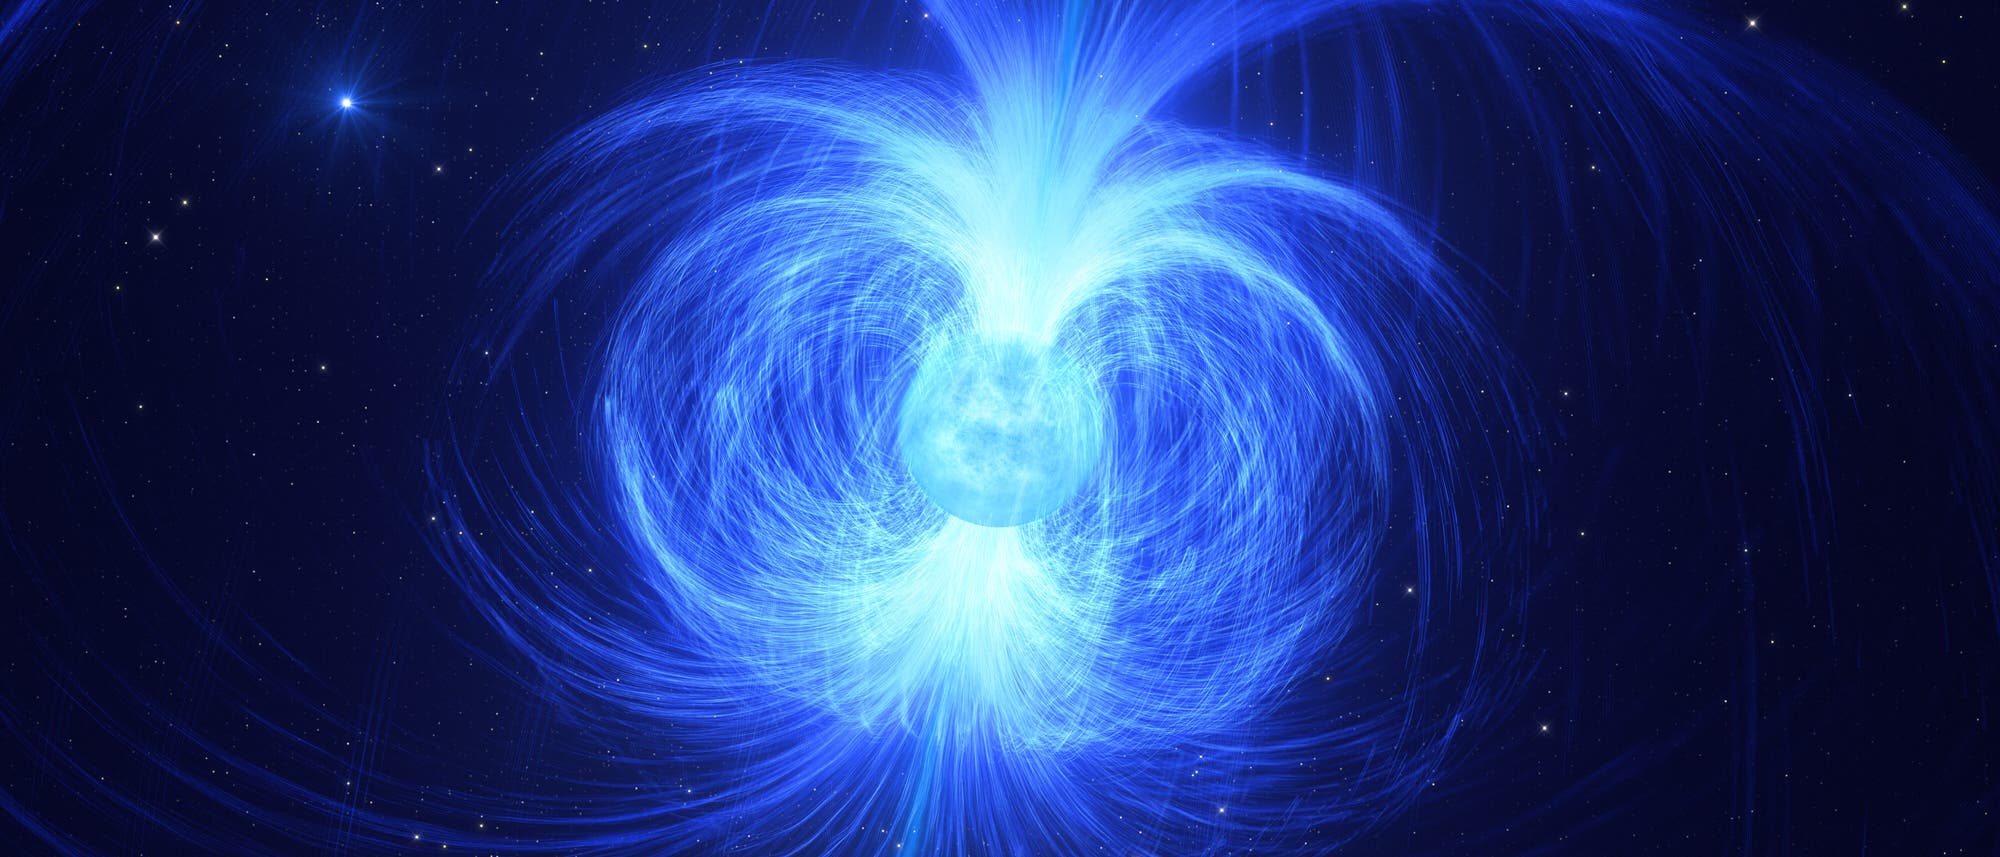 Künstlerische Darstellung eines stark magnetischen Neutronensterns